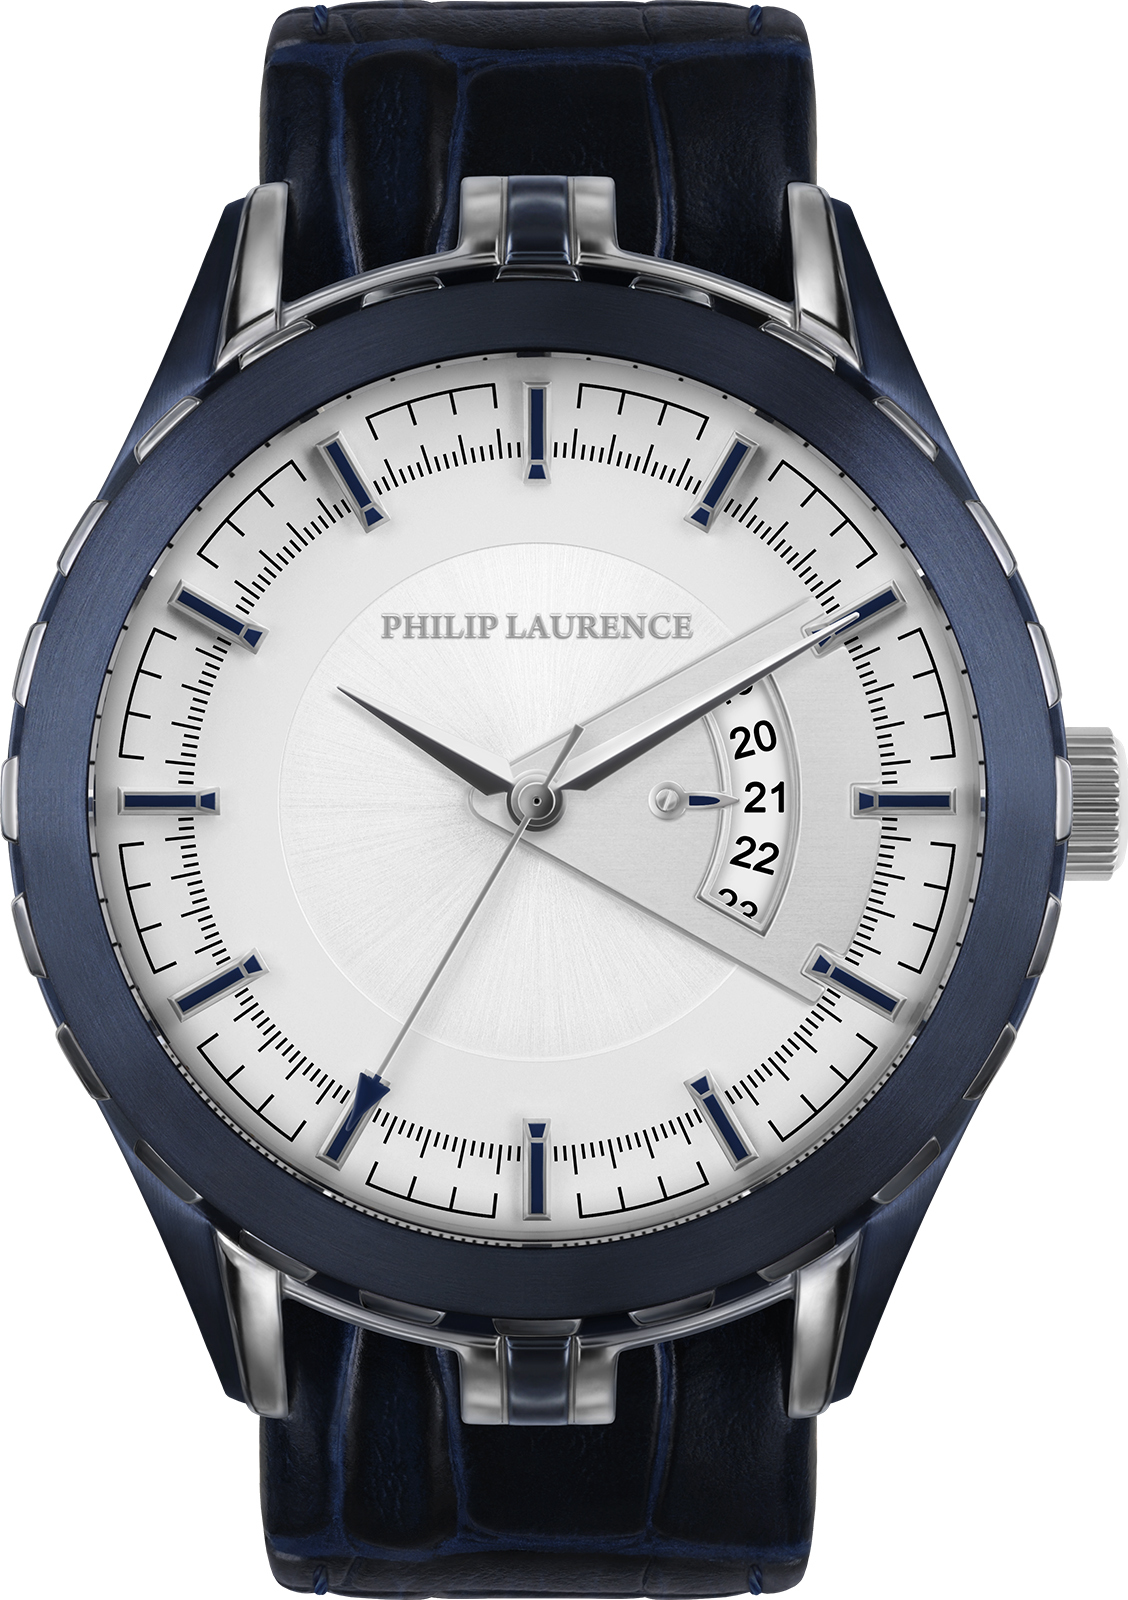 Наручные часы Philip Laurence pg255gs3-43a. Philip Laurence часы pg1953. Philip Laurence Basic pg255gs3-13b. Наручные часы Philip Laurence pg257gs0-17b.